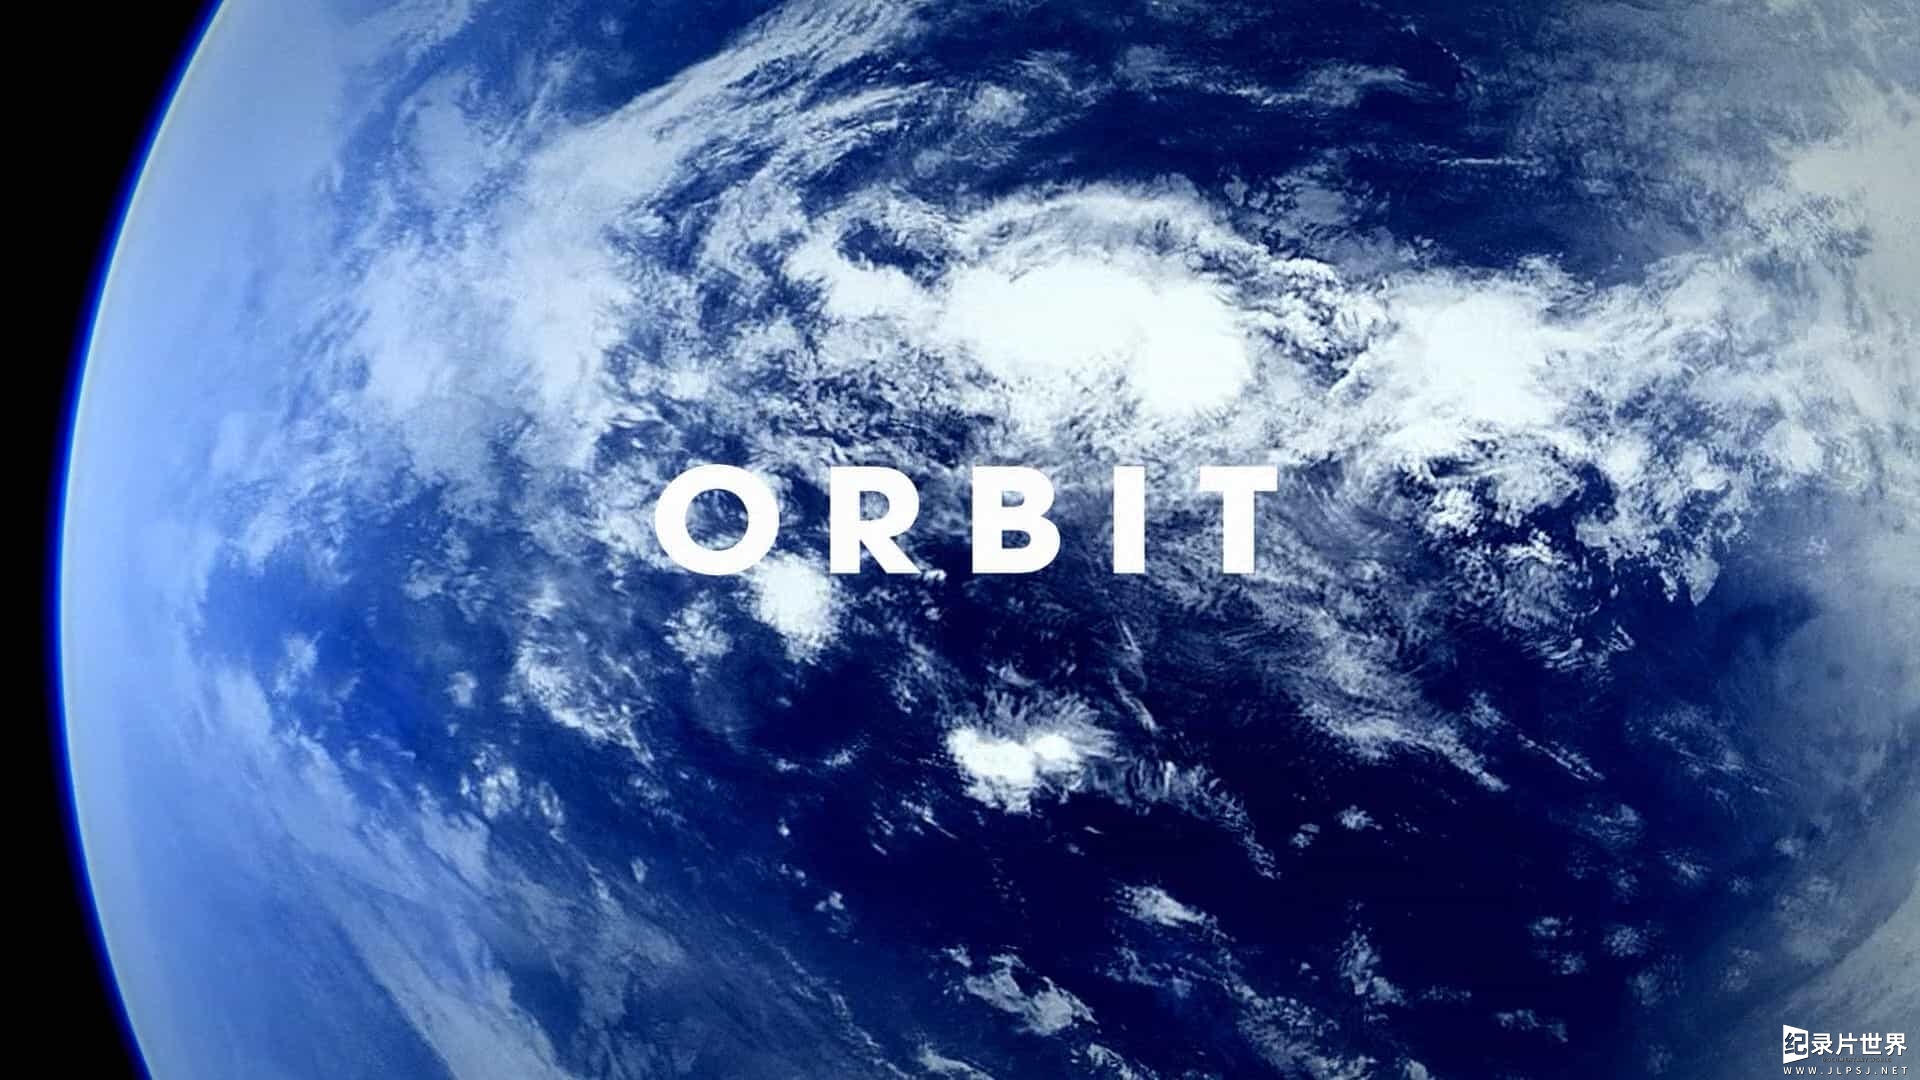 BBC纪录片《寰宇轨迹/非凡旅程:地球公转与自转 Orbit Earths Extraordinary Journey》全3集 